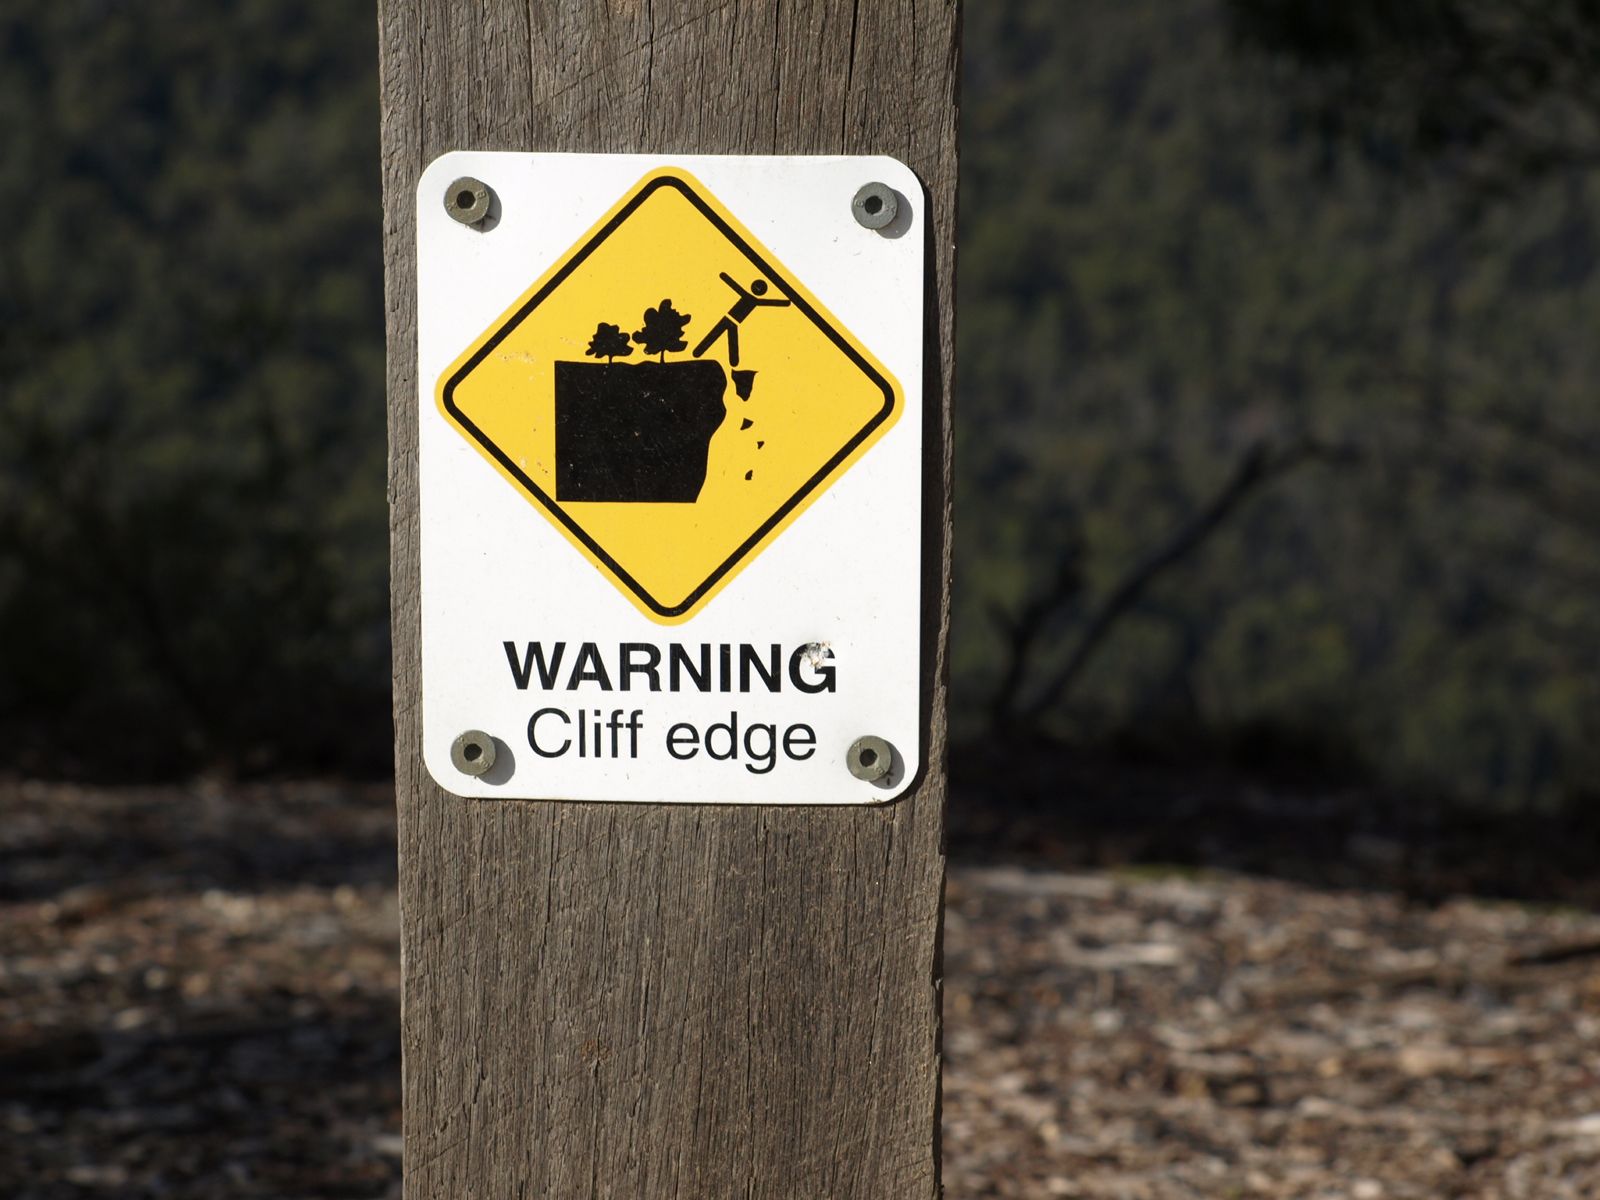 Cliff Edge warning in Australia | Australian Memories | Pinterest ...